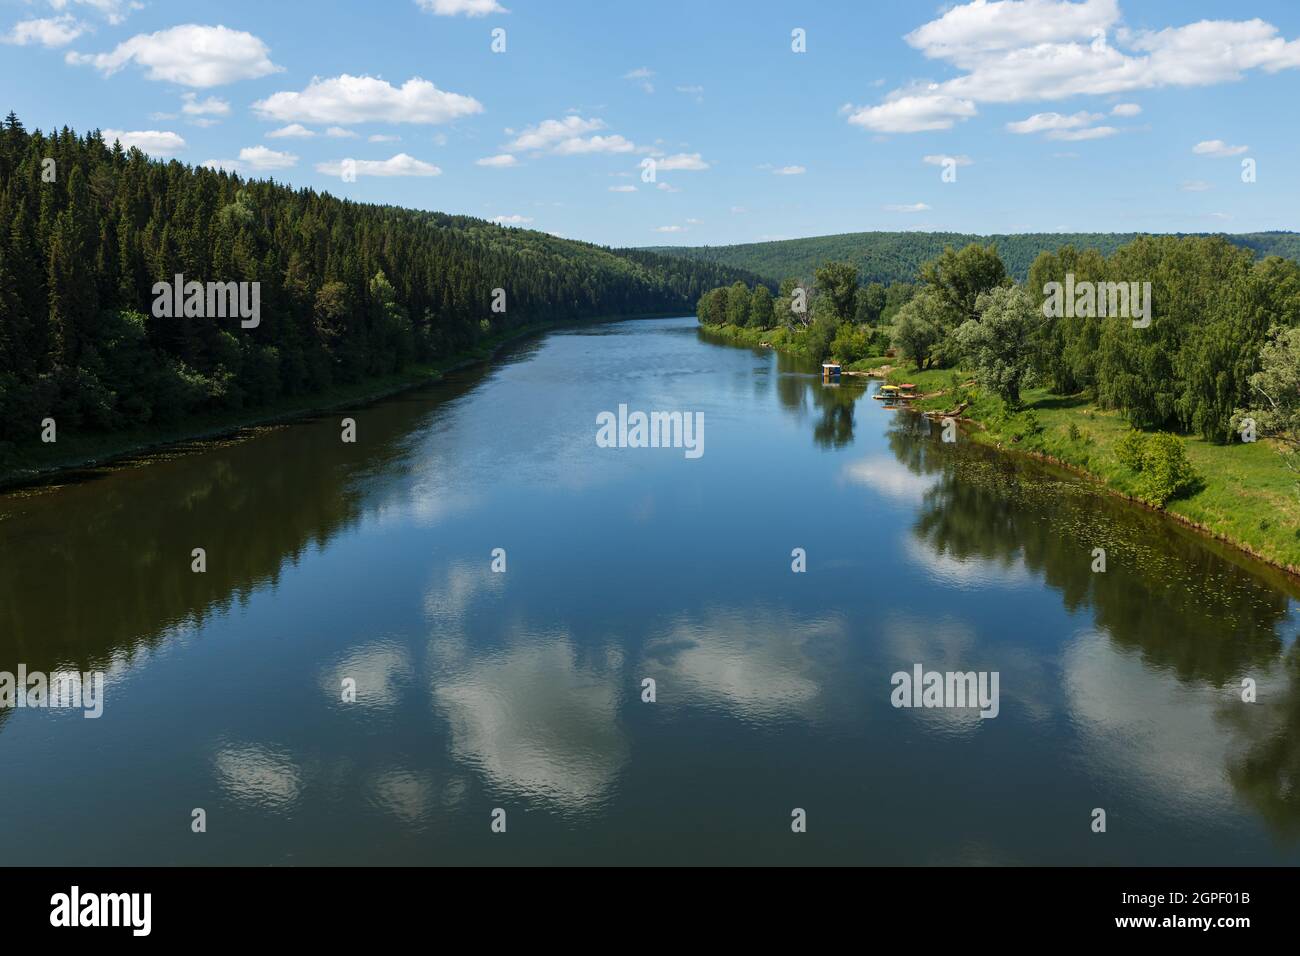 Ufa river near the village of Sarana in the Sverdlovsk Oblast, Russia Stock Photo